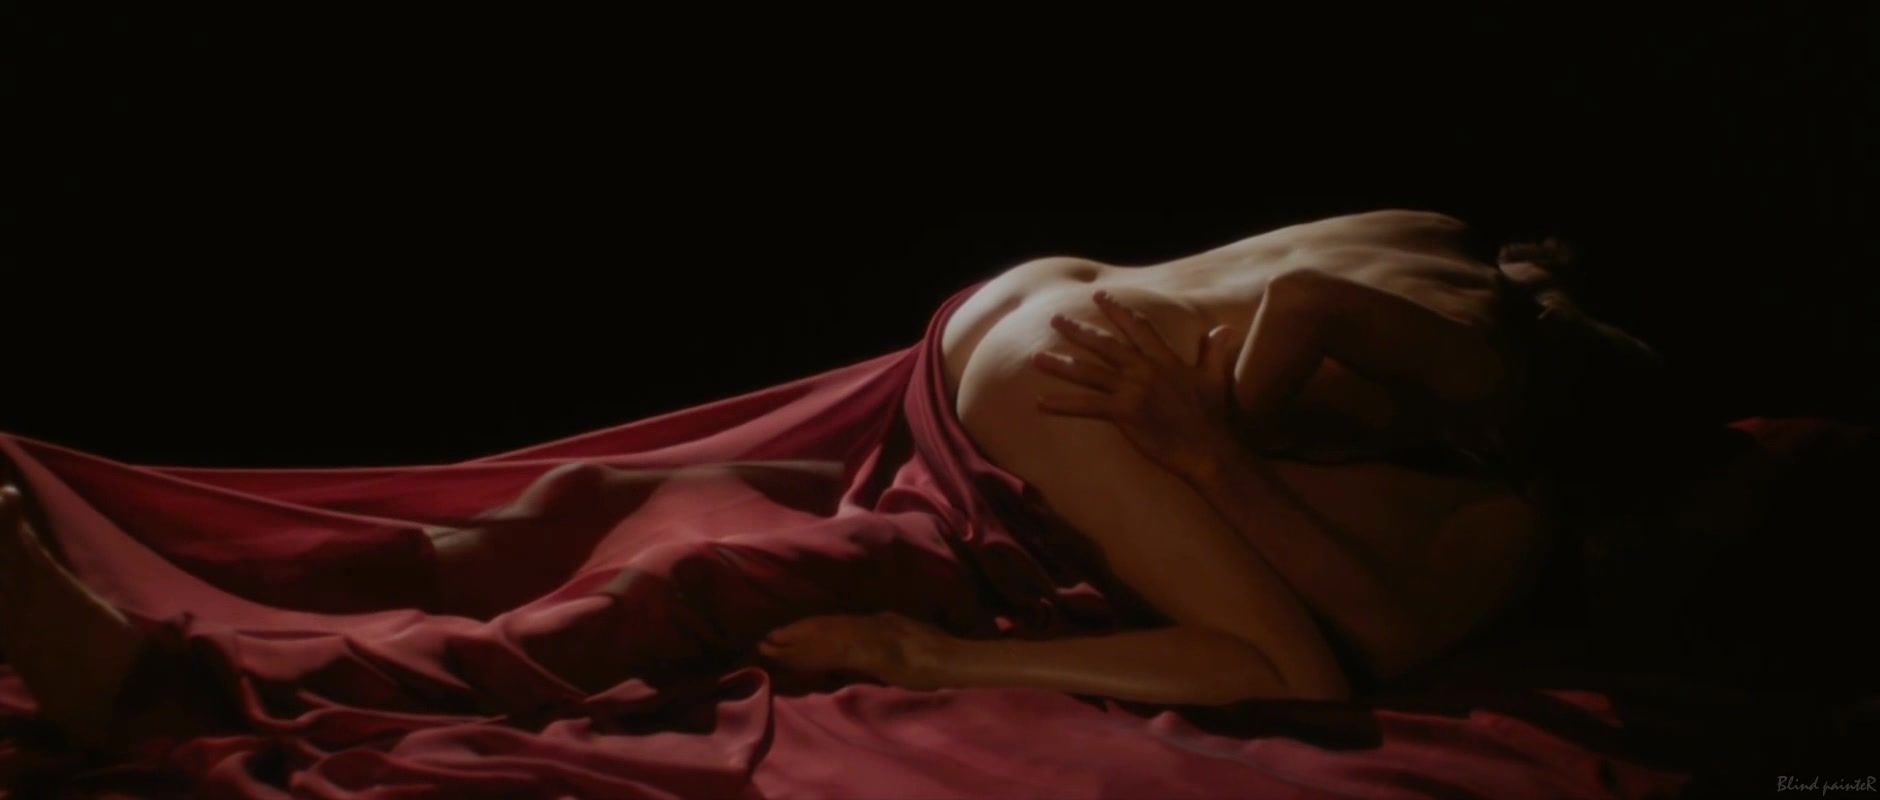 Amateur Veronique Picciotto - Suivez La Fleche (2011) Fantasy Massage